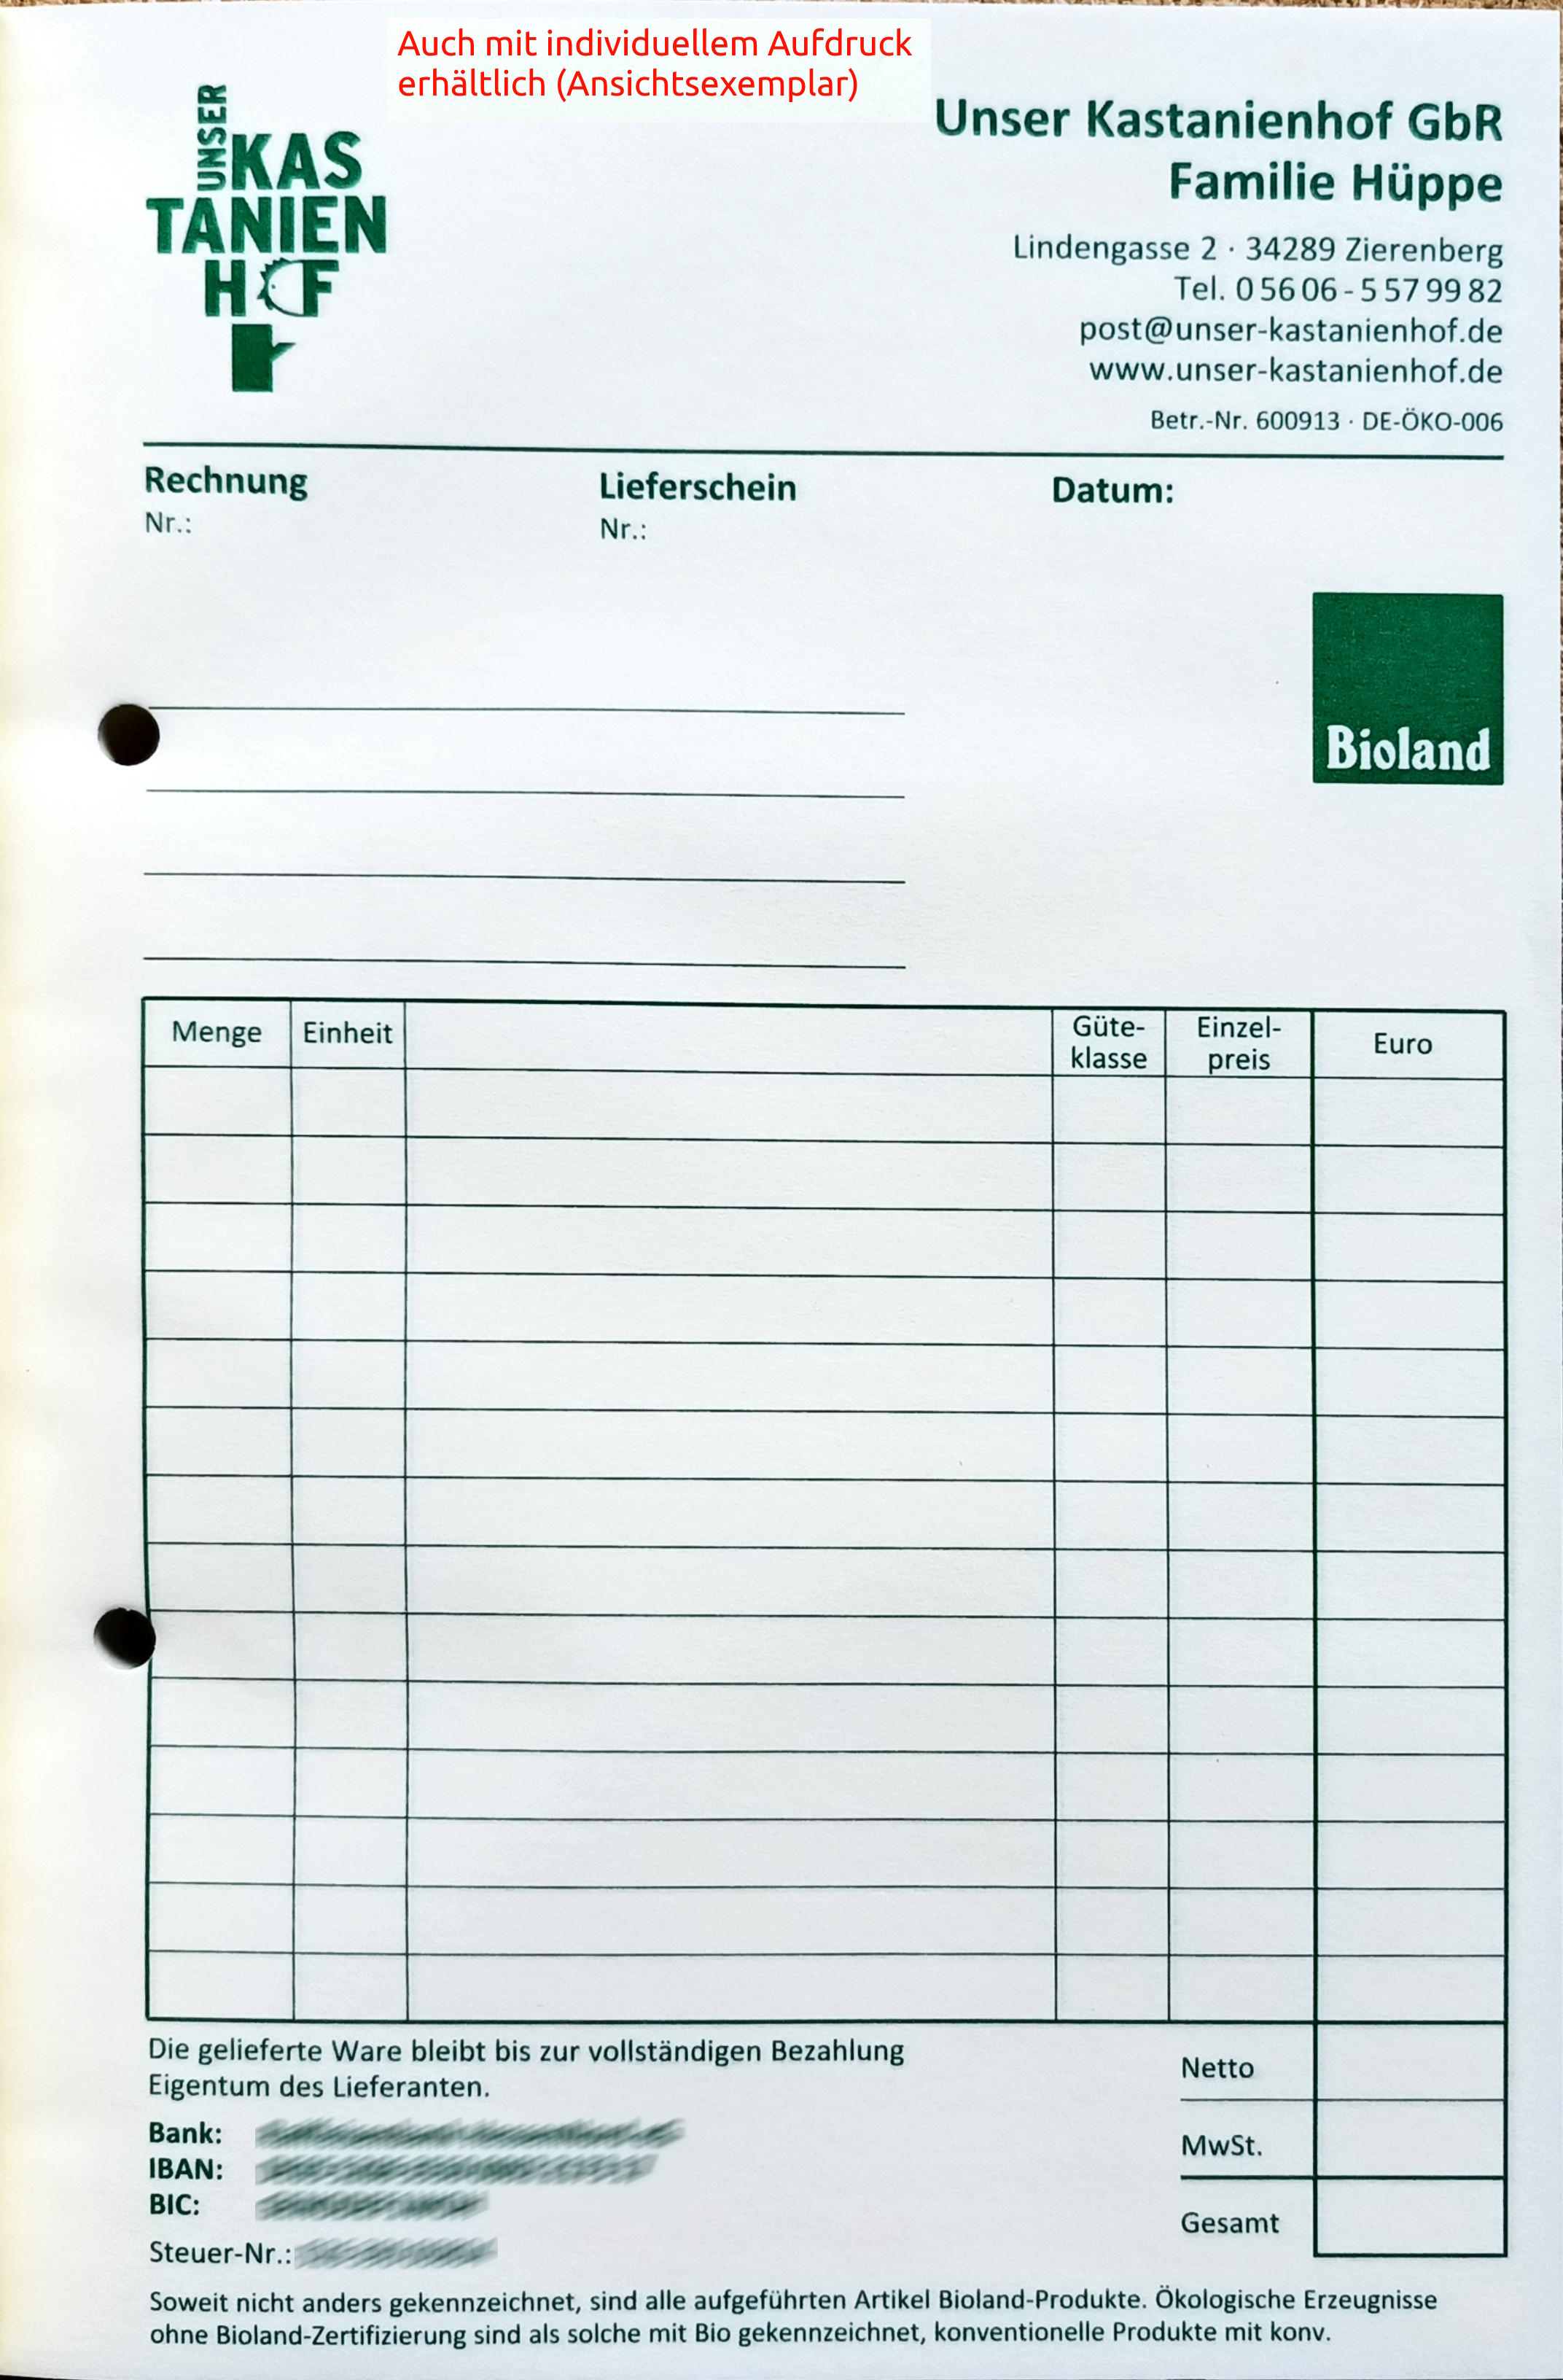 Rechnungs-/Lieferscheinbuch